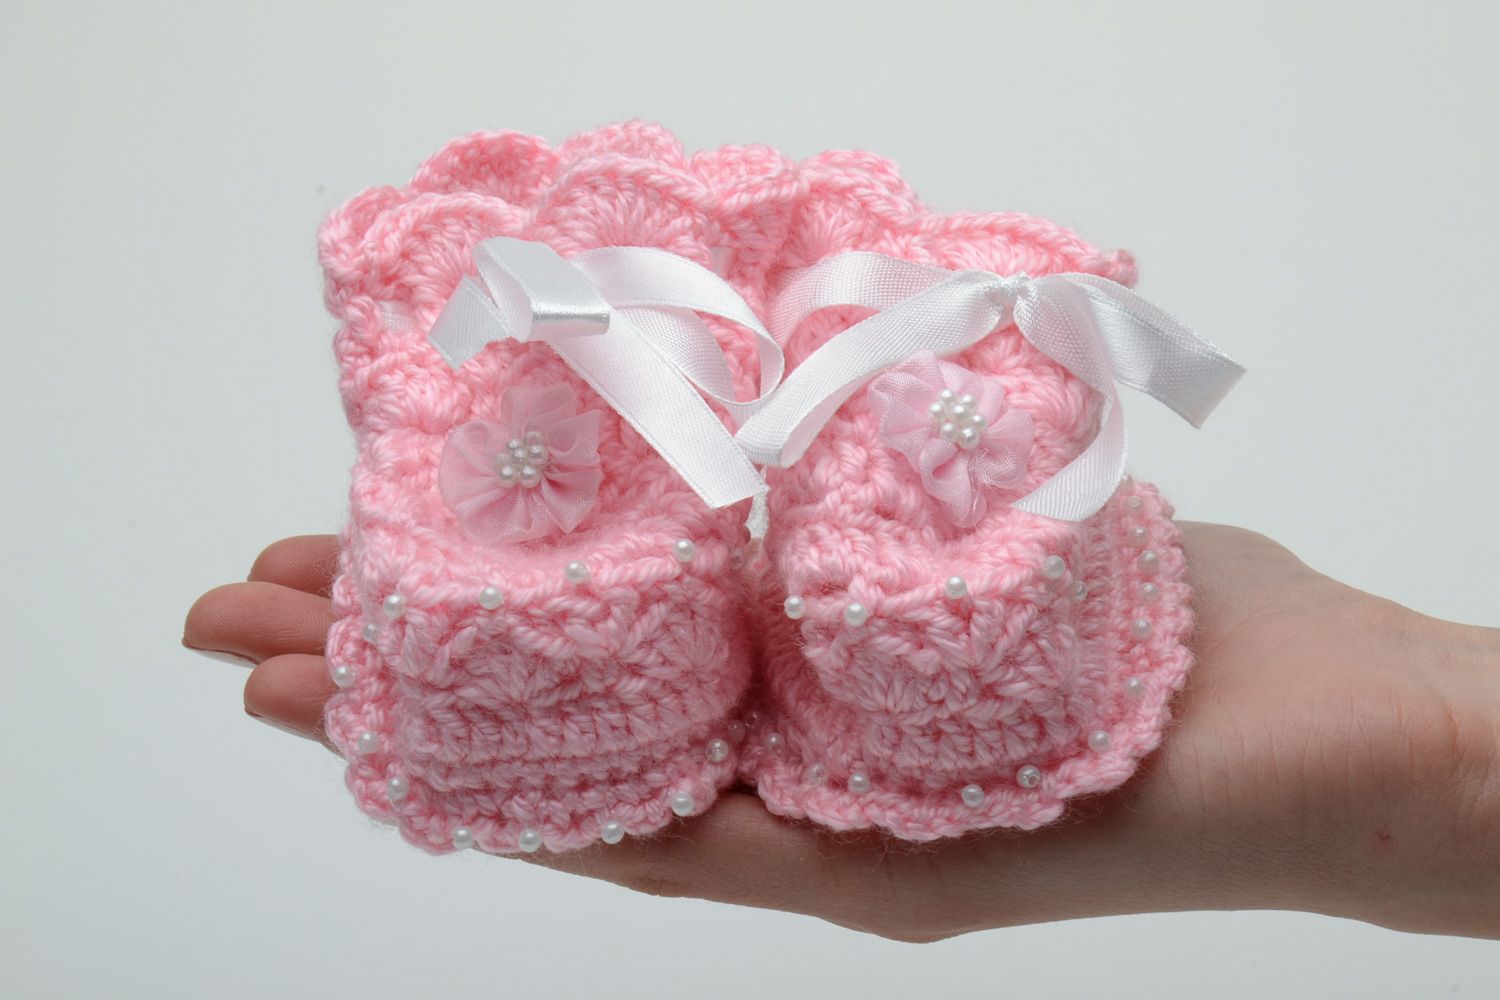 Chaussons et bonnet au crochet pour bébé faits main roses chauds originaux photo 5